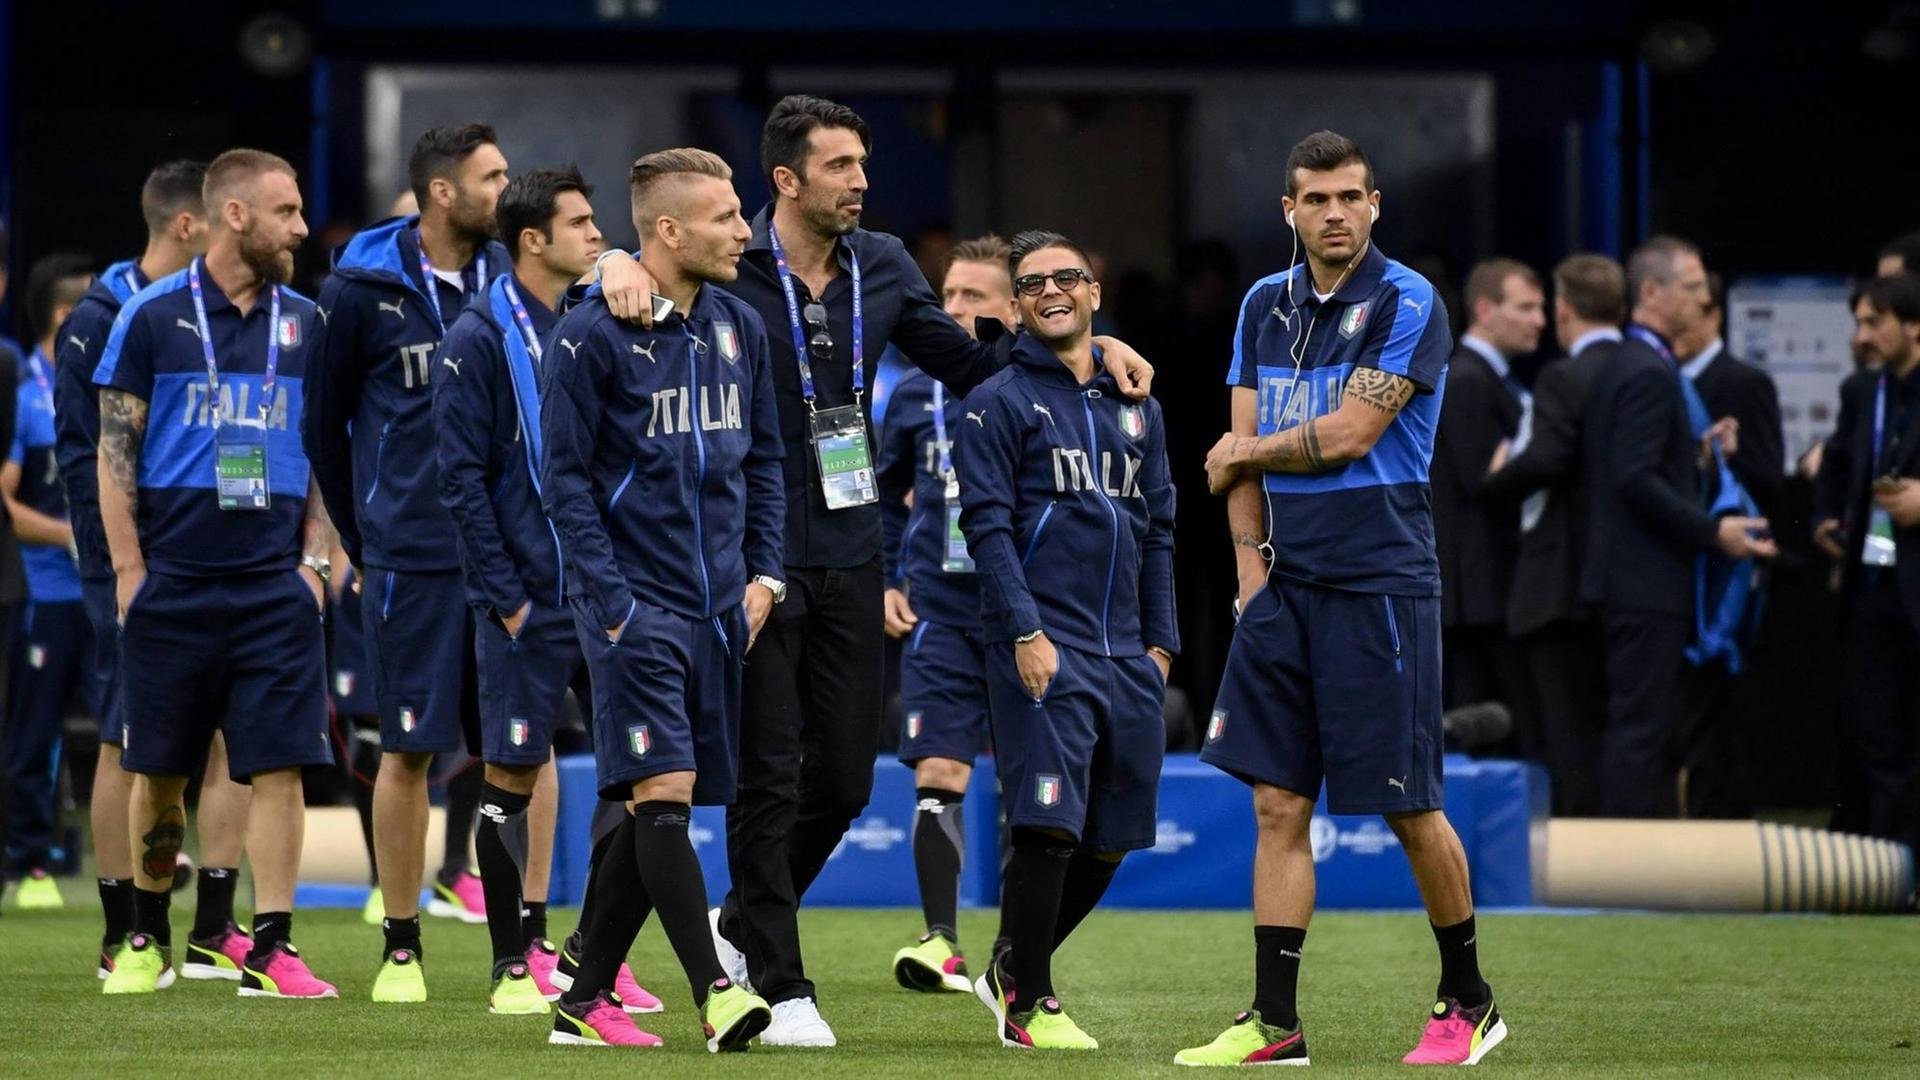 Italien gegen Deutschland bei der Fußball-EM